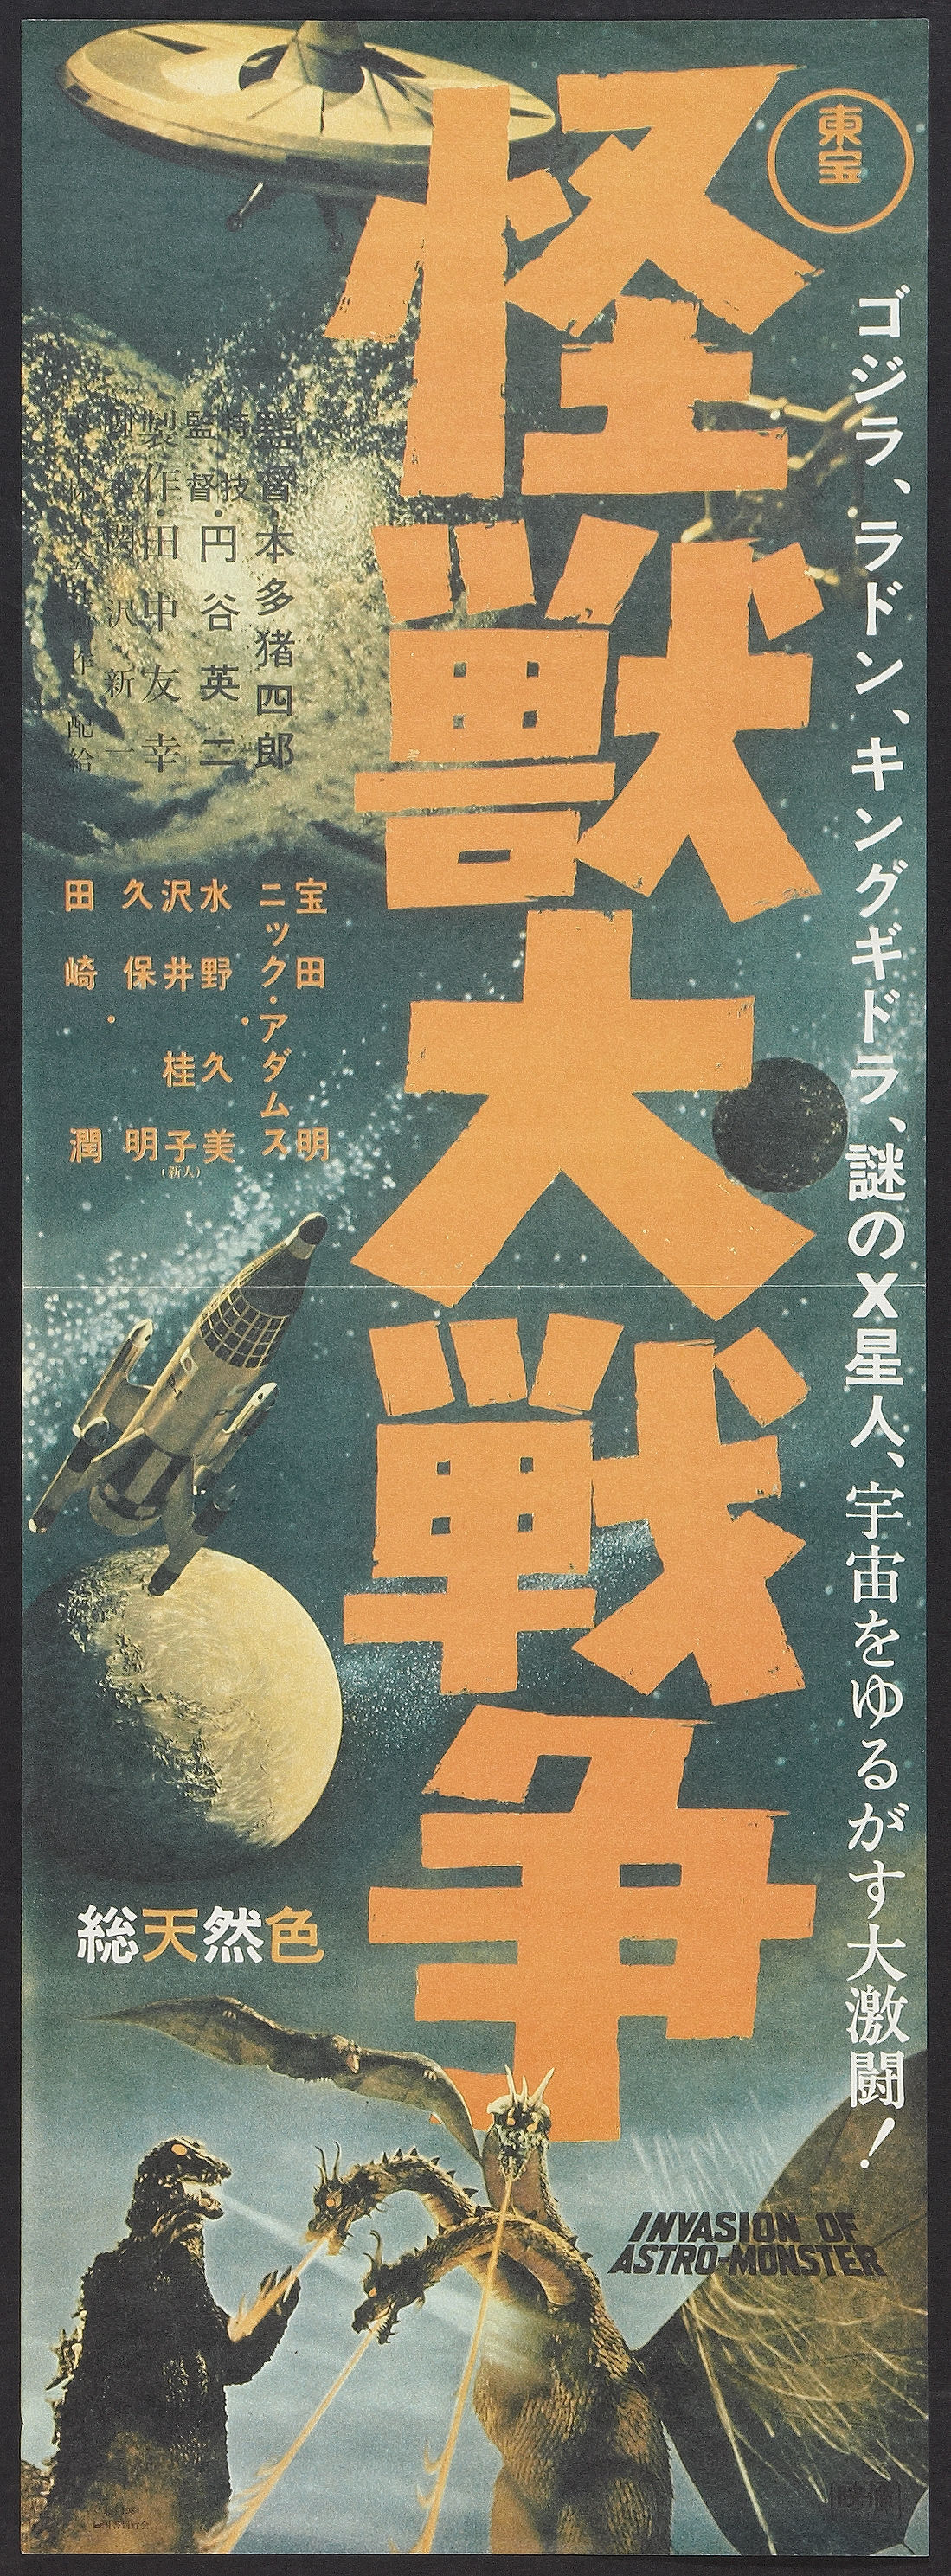 Monster Zero (Toho, 1965) 3.jpg